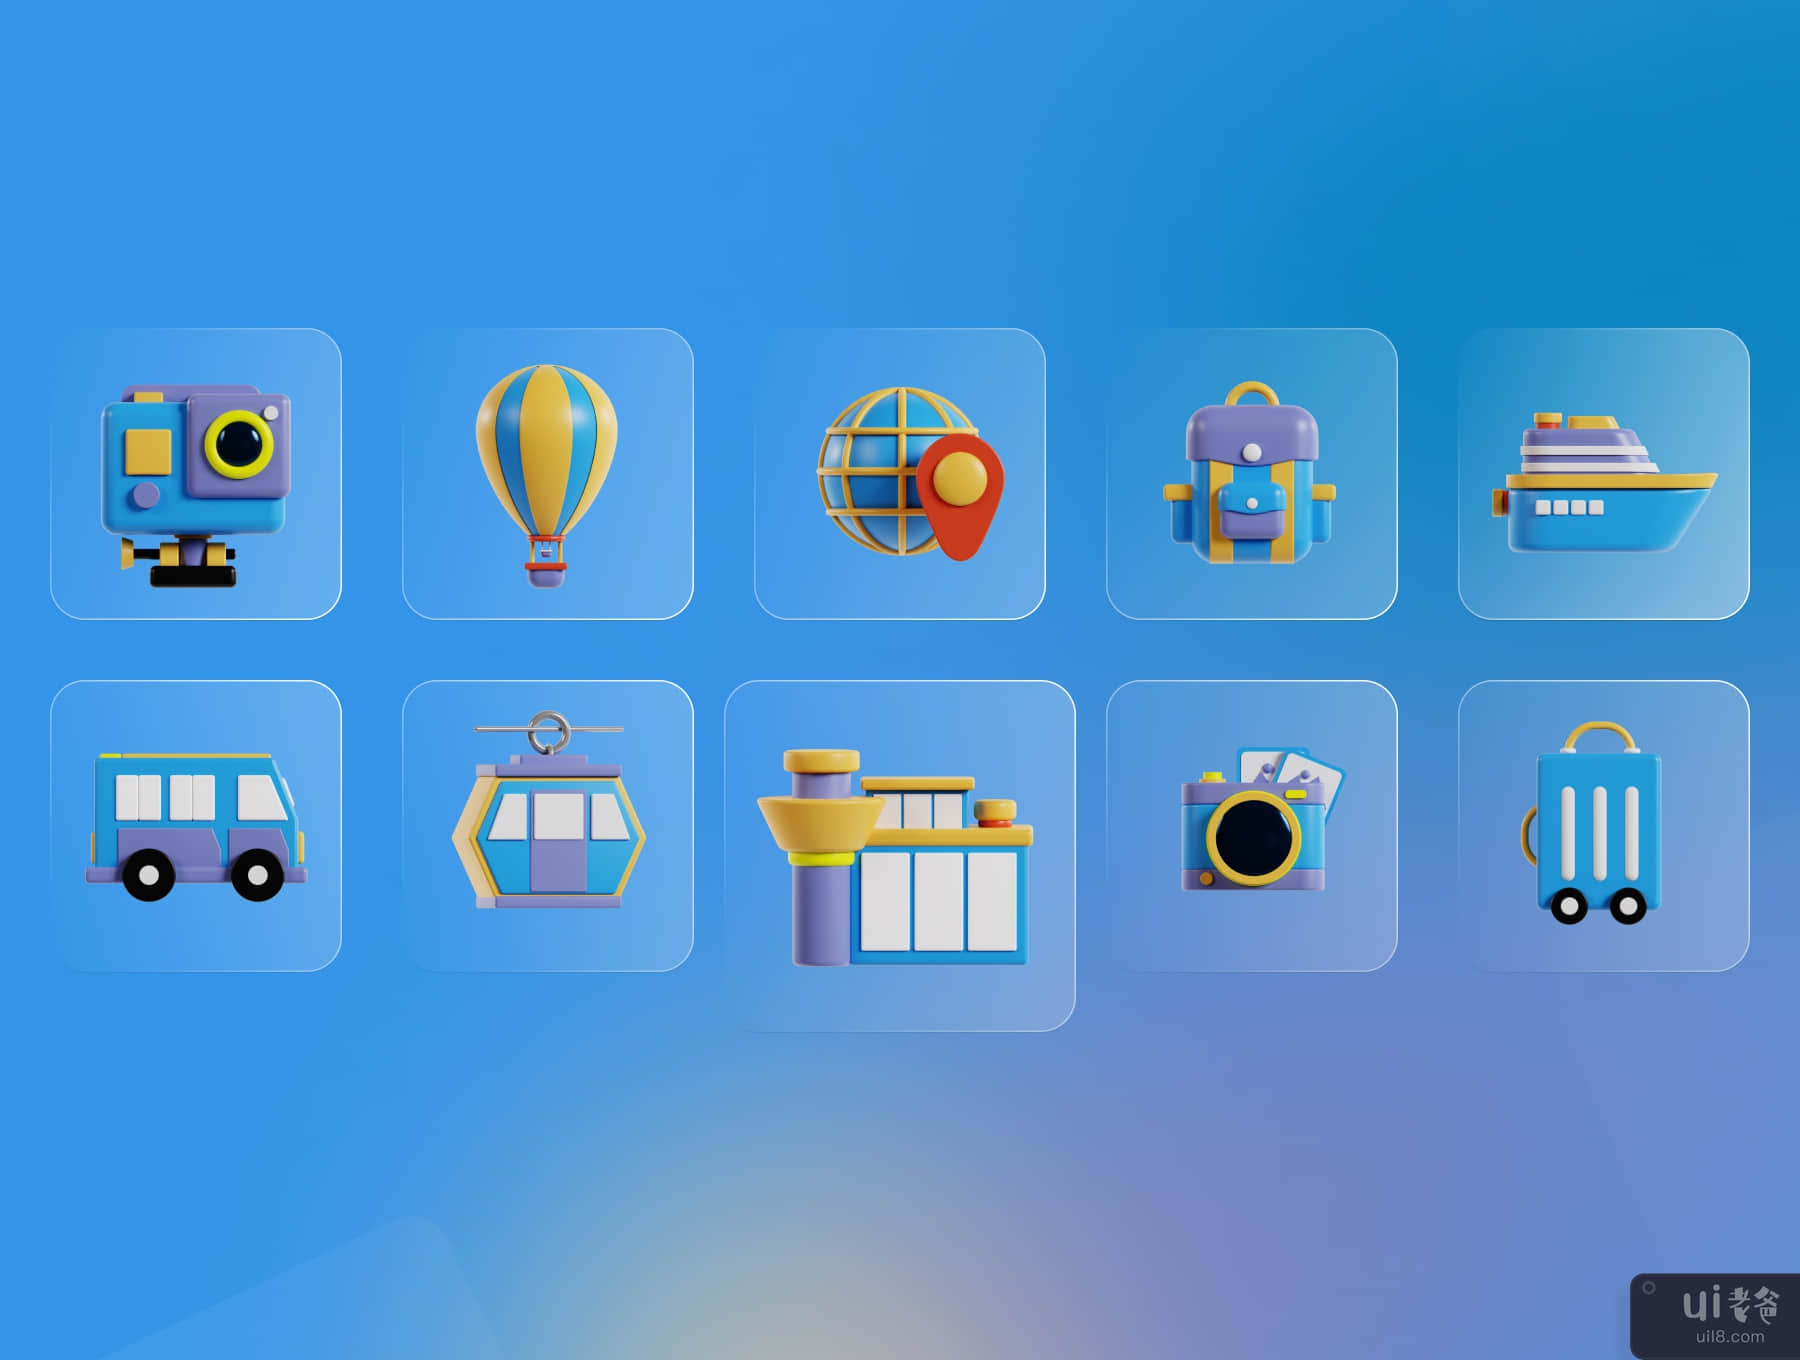 旅行和度假 3D 图标包 (Travel & Vacation 3D Icon Pack)插图1